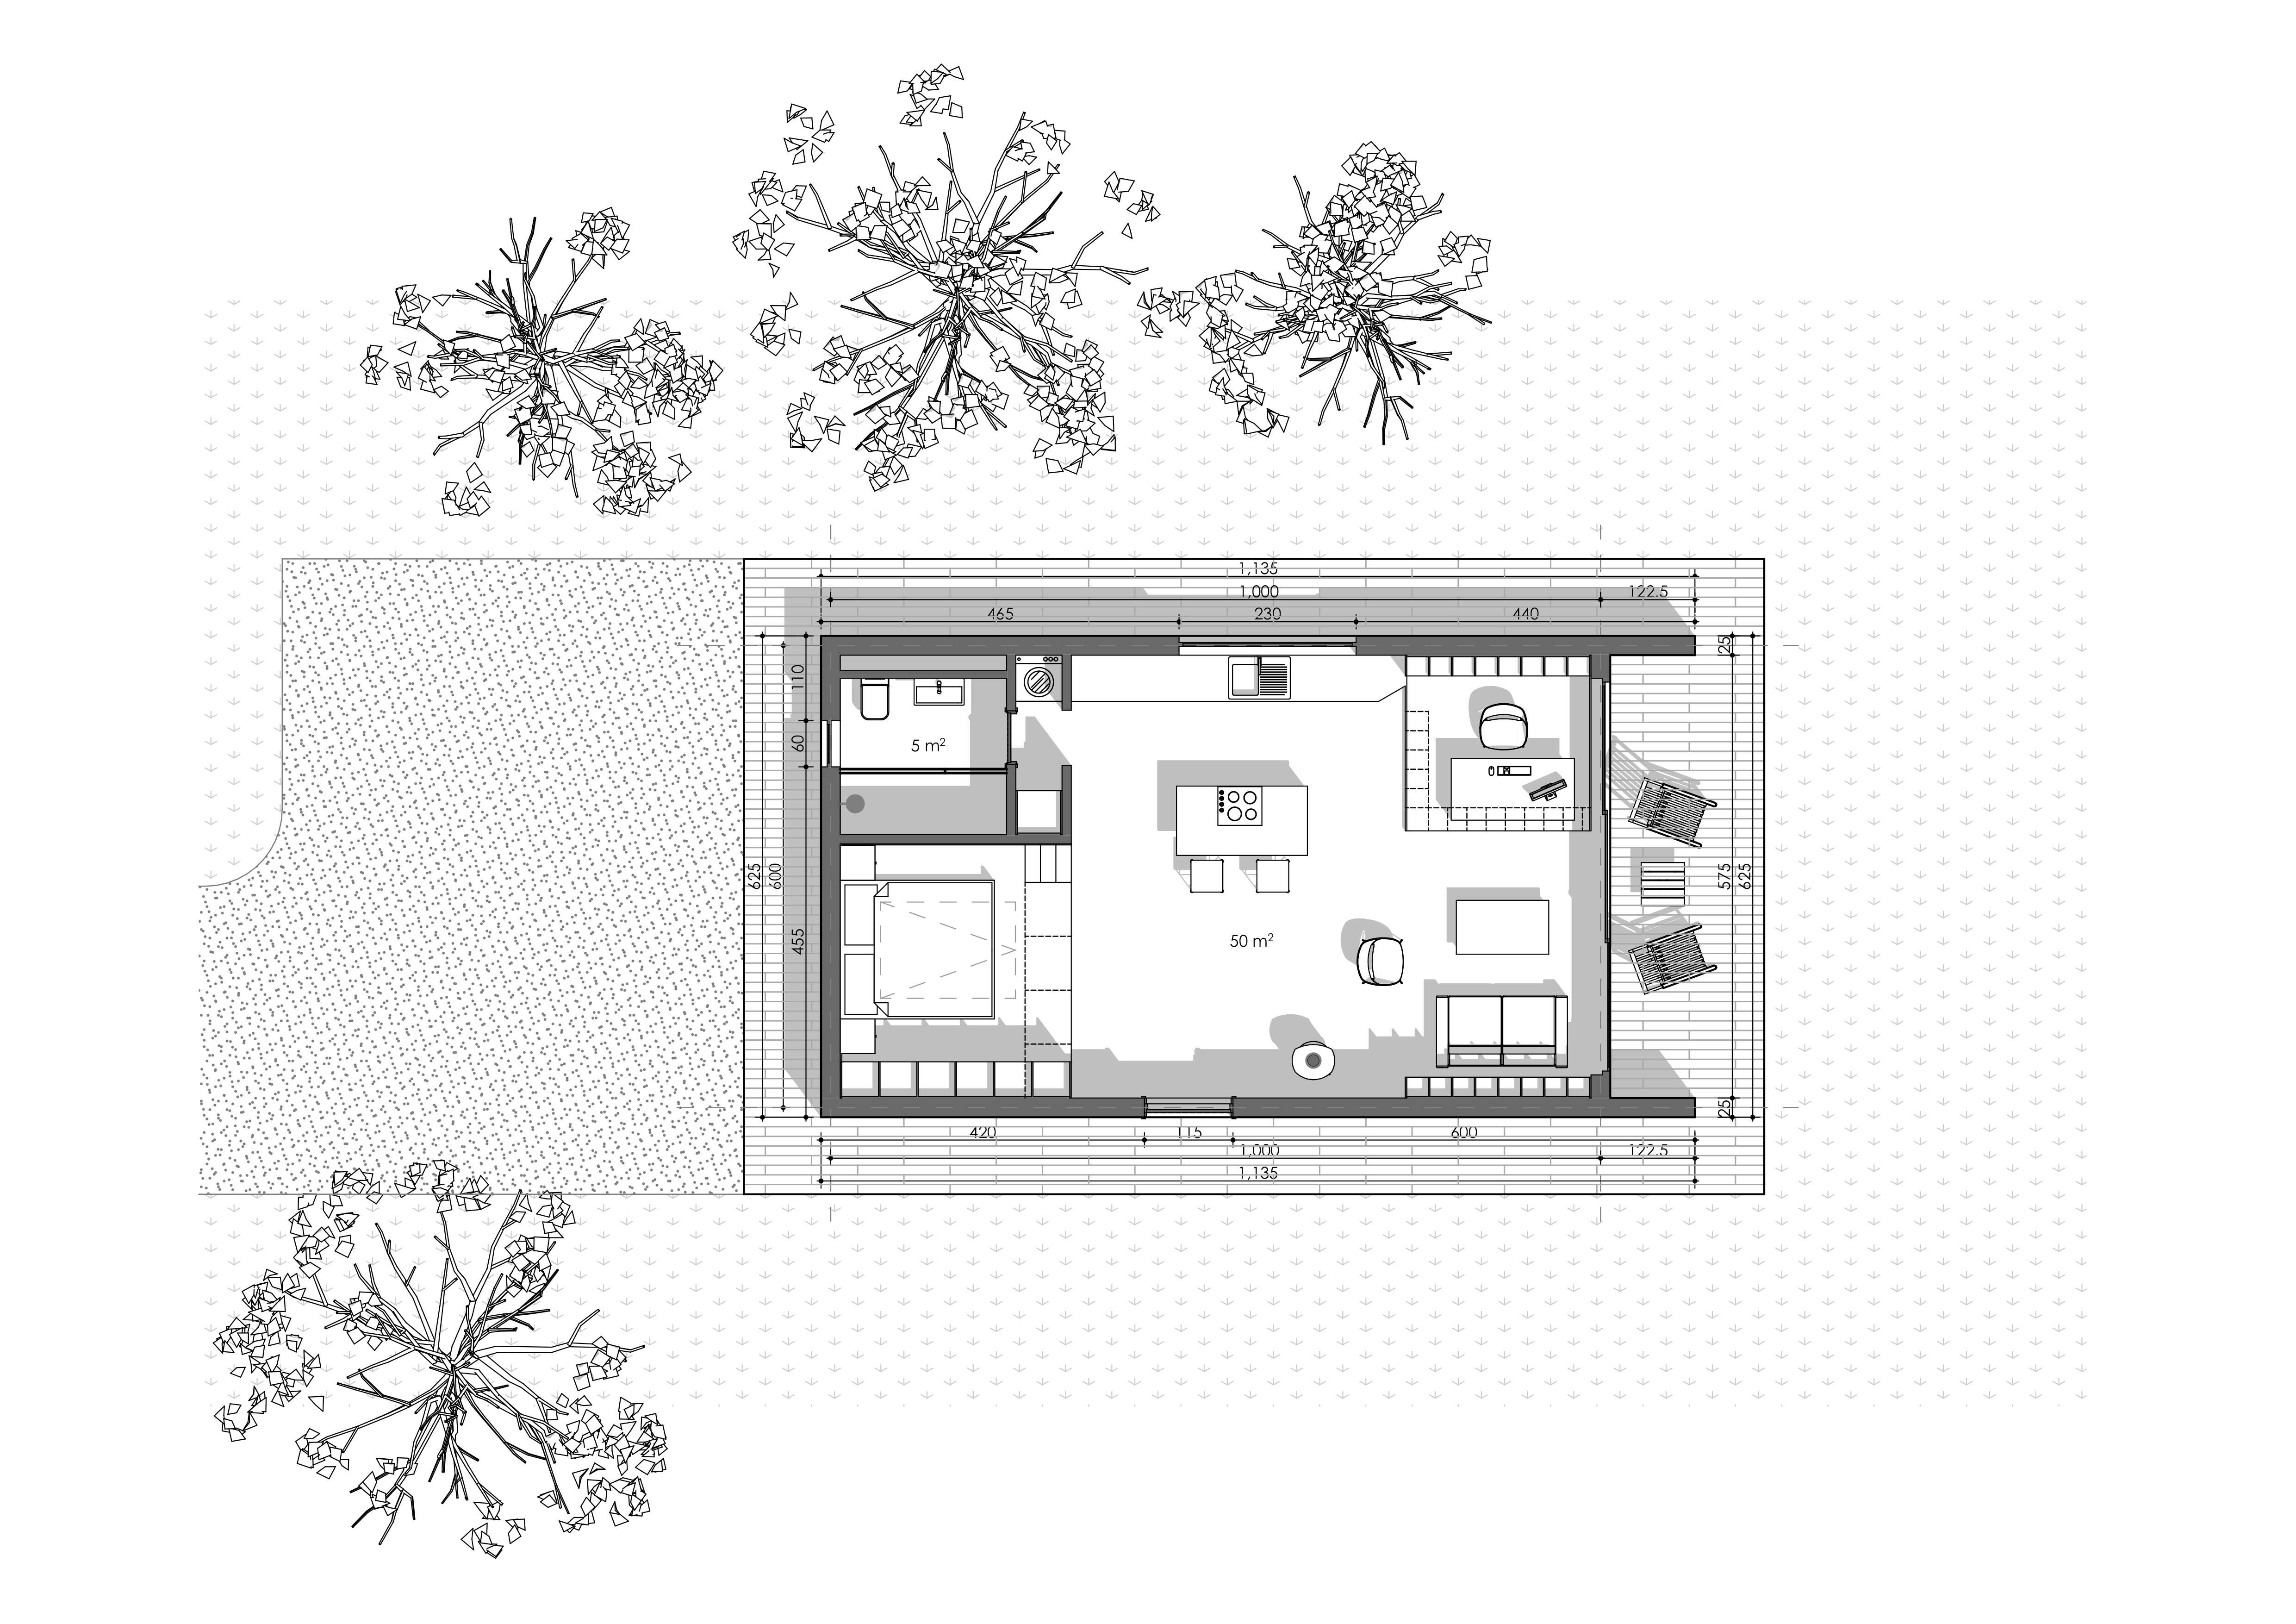 222-house-vodora-site-plan0001.jpg